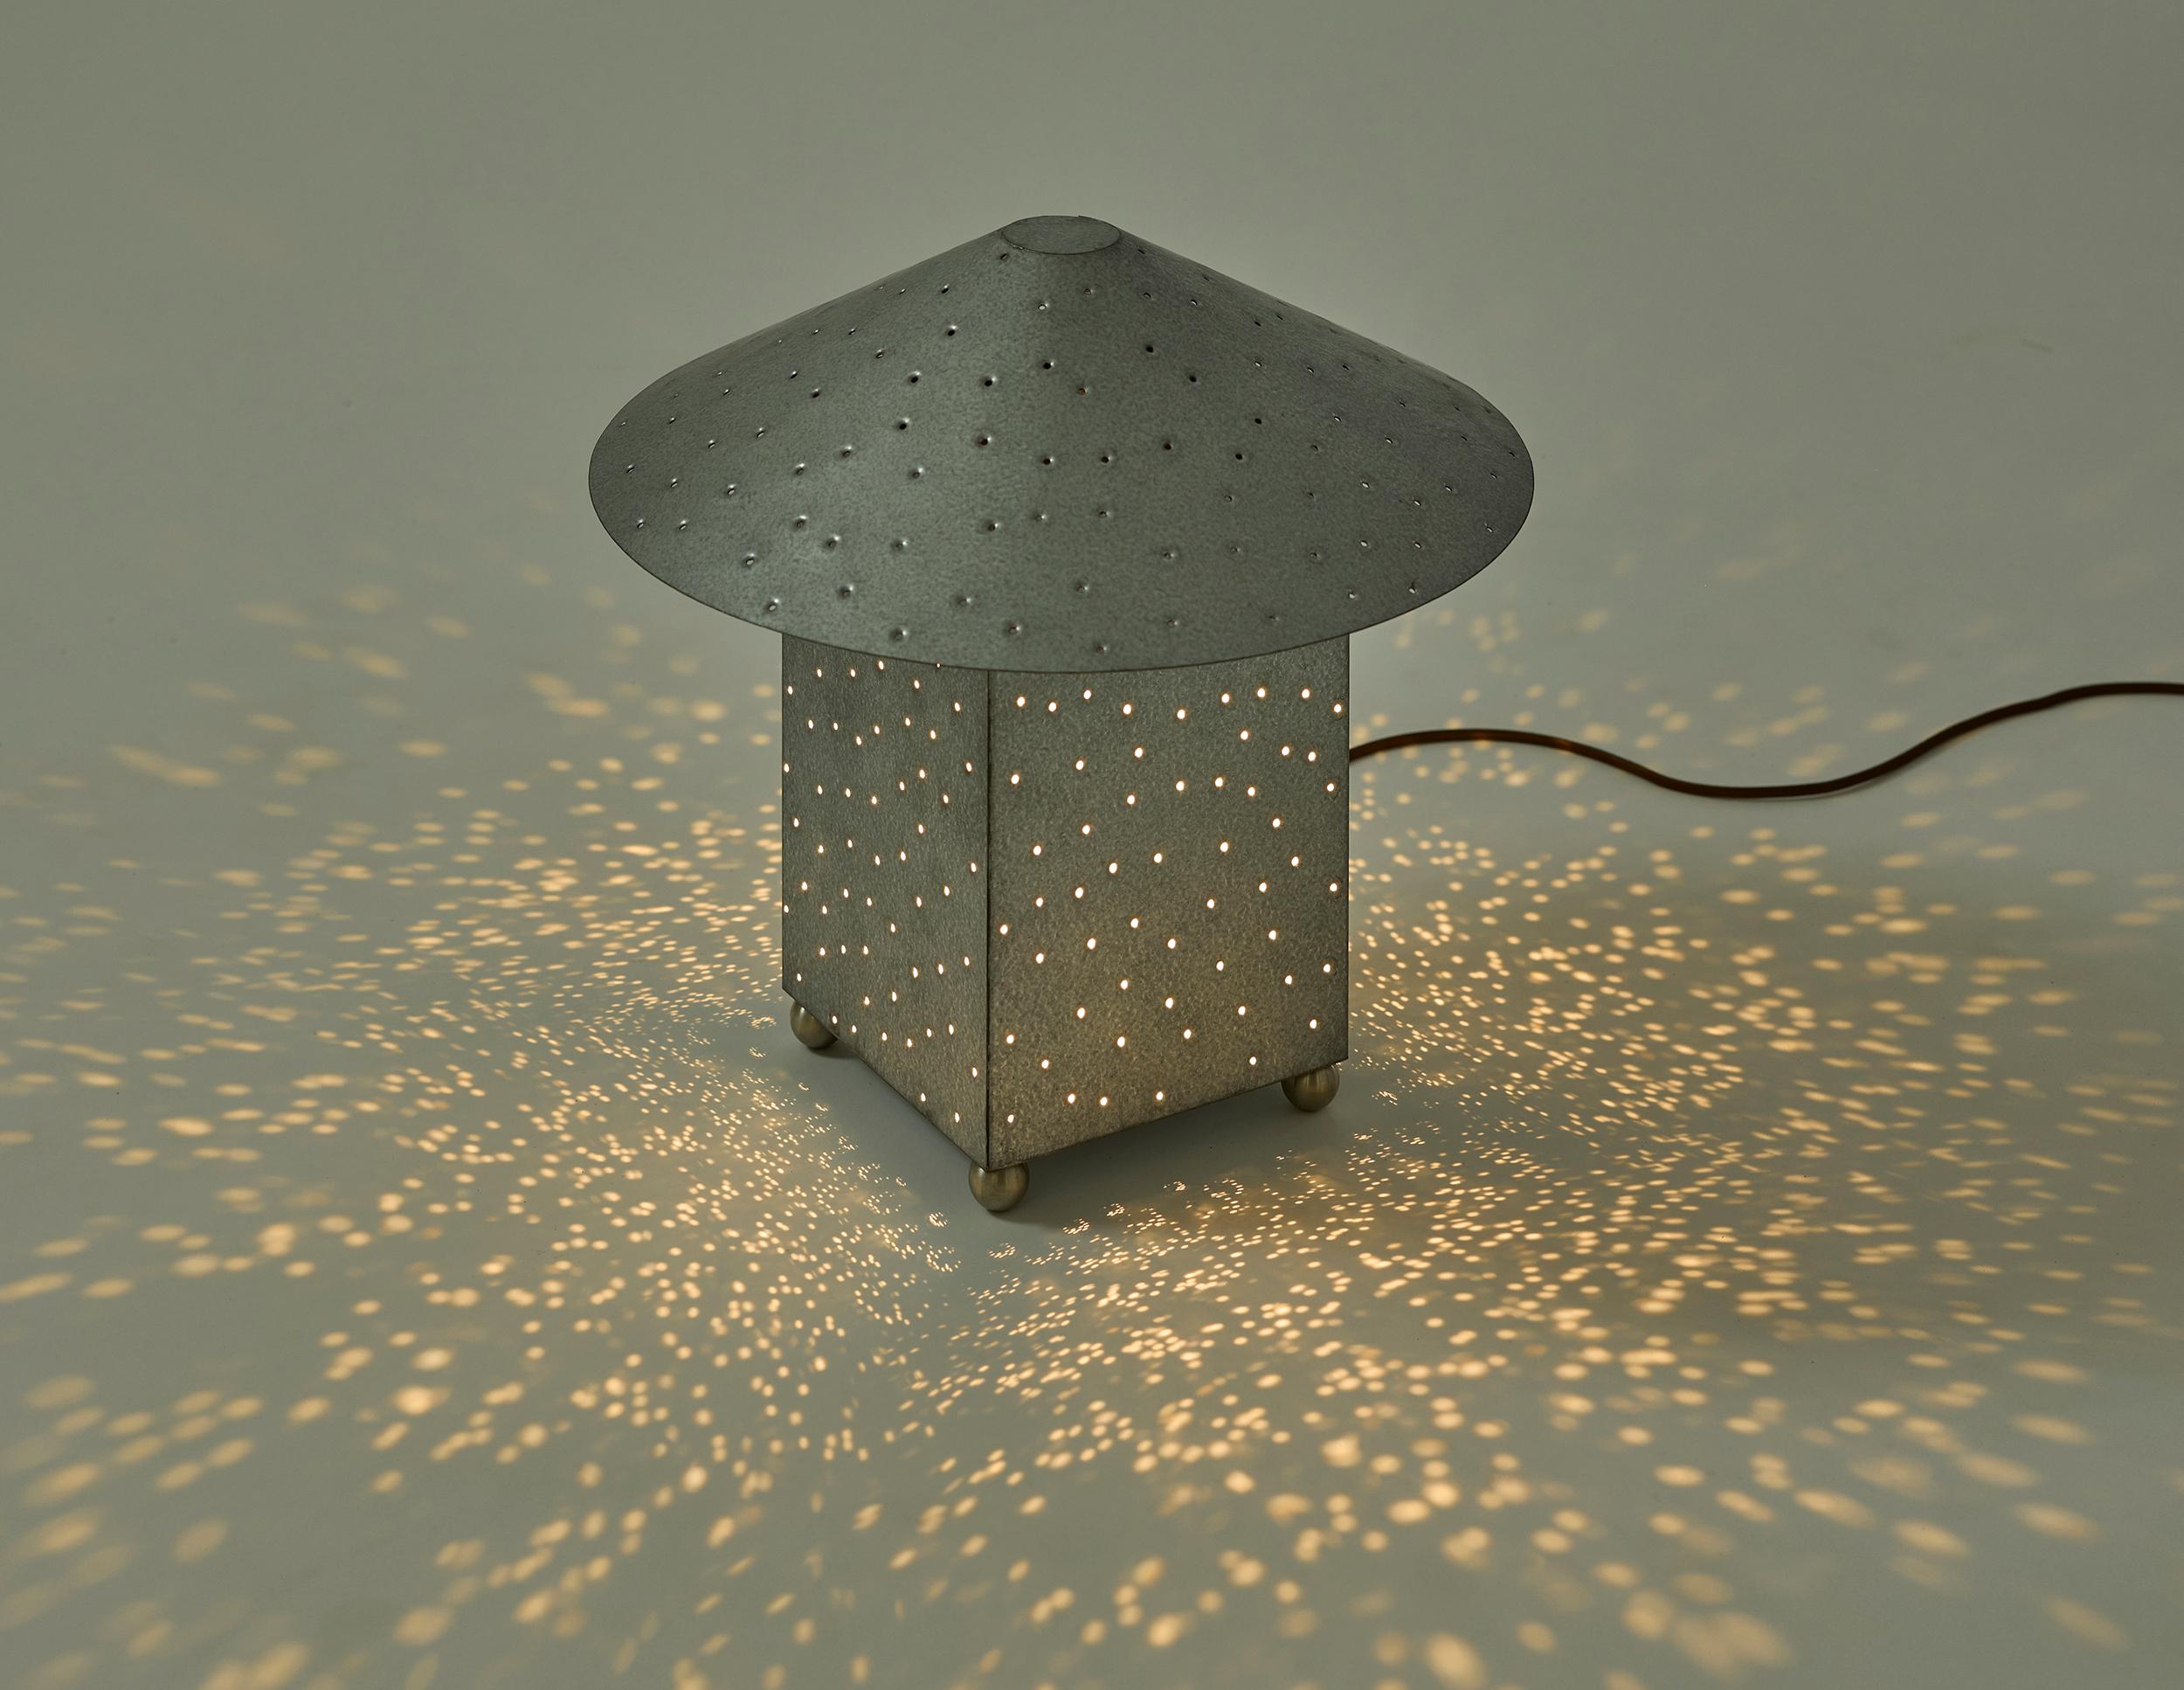 La Lin Lighting Collection de Muhly s'inspire de l'œuvre de 2001 de l'artiste environnementale Maya Lin, Ecliptic, dans laquelle l'emplacement des étoiles est représenté par des points lumineux incrustés dans un sol en béton. S'inspirant du ciel